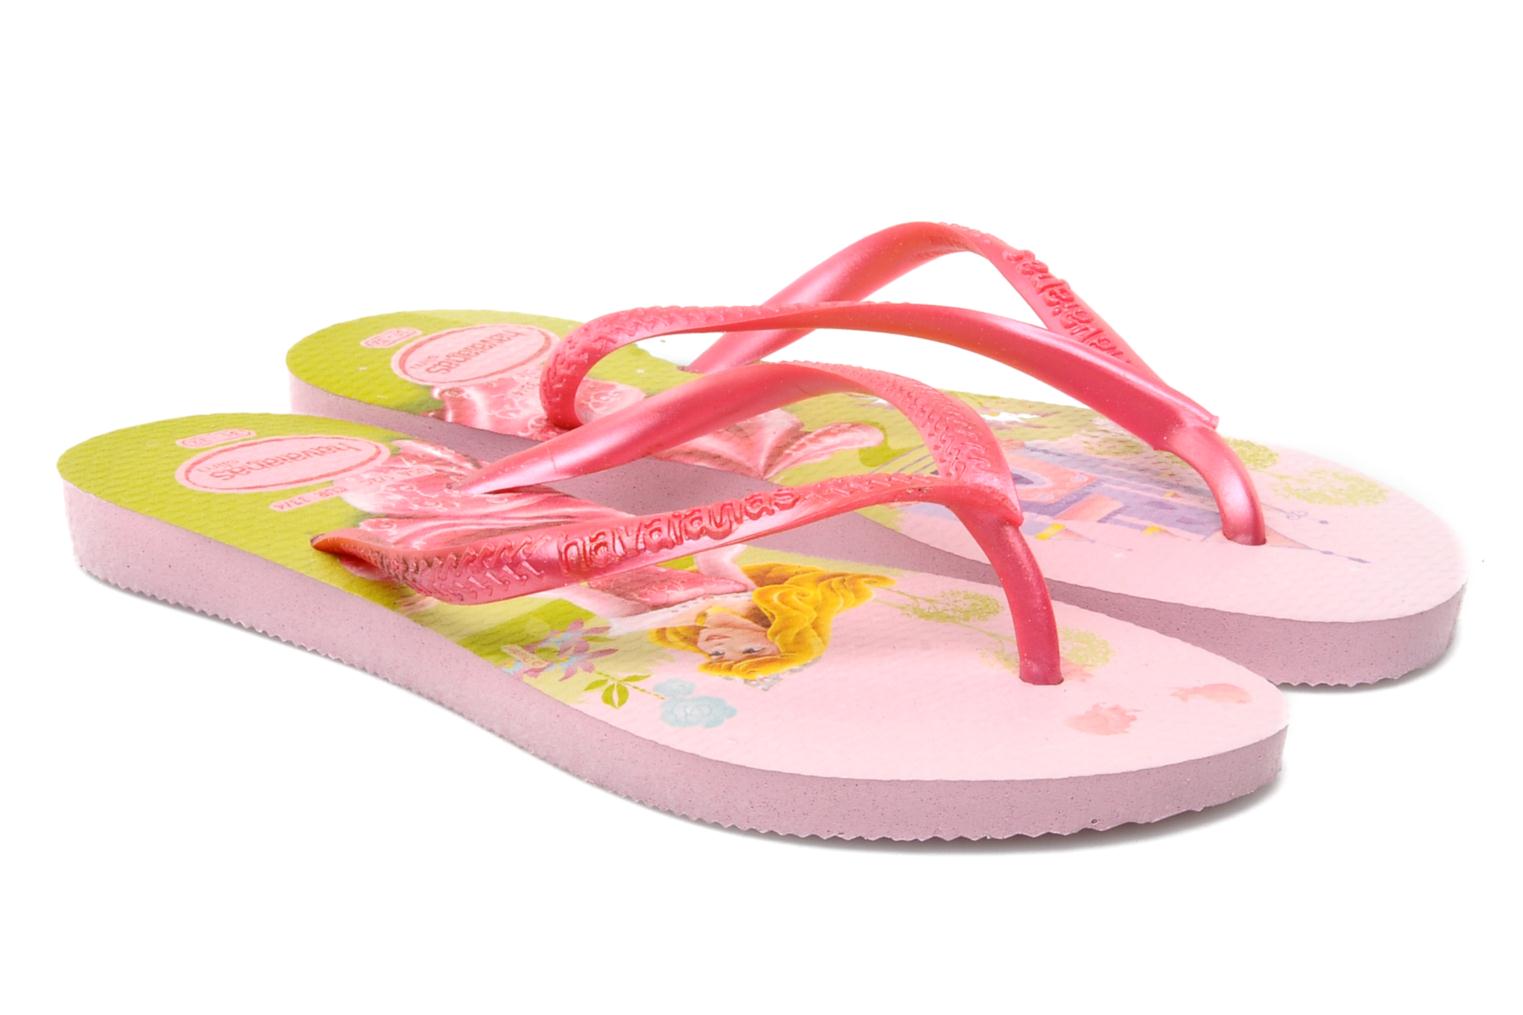 Flip-flops - Kids Slim Princess White/Pink